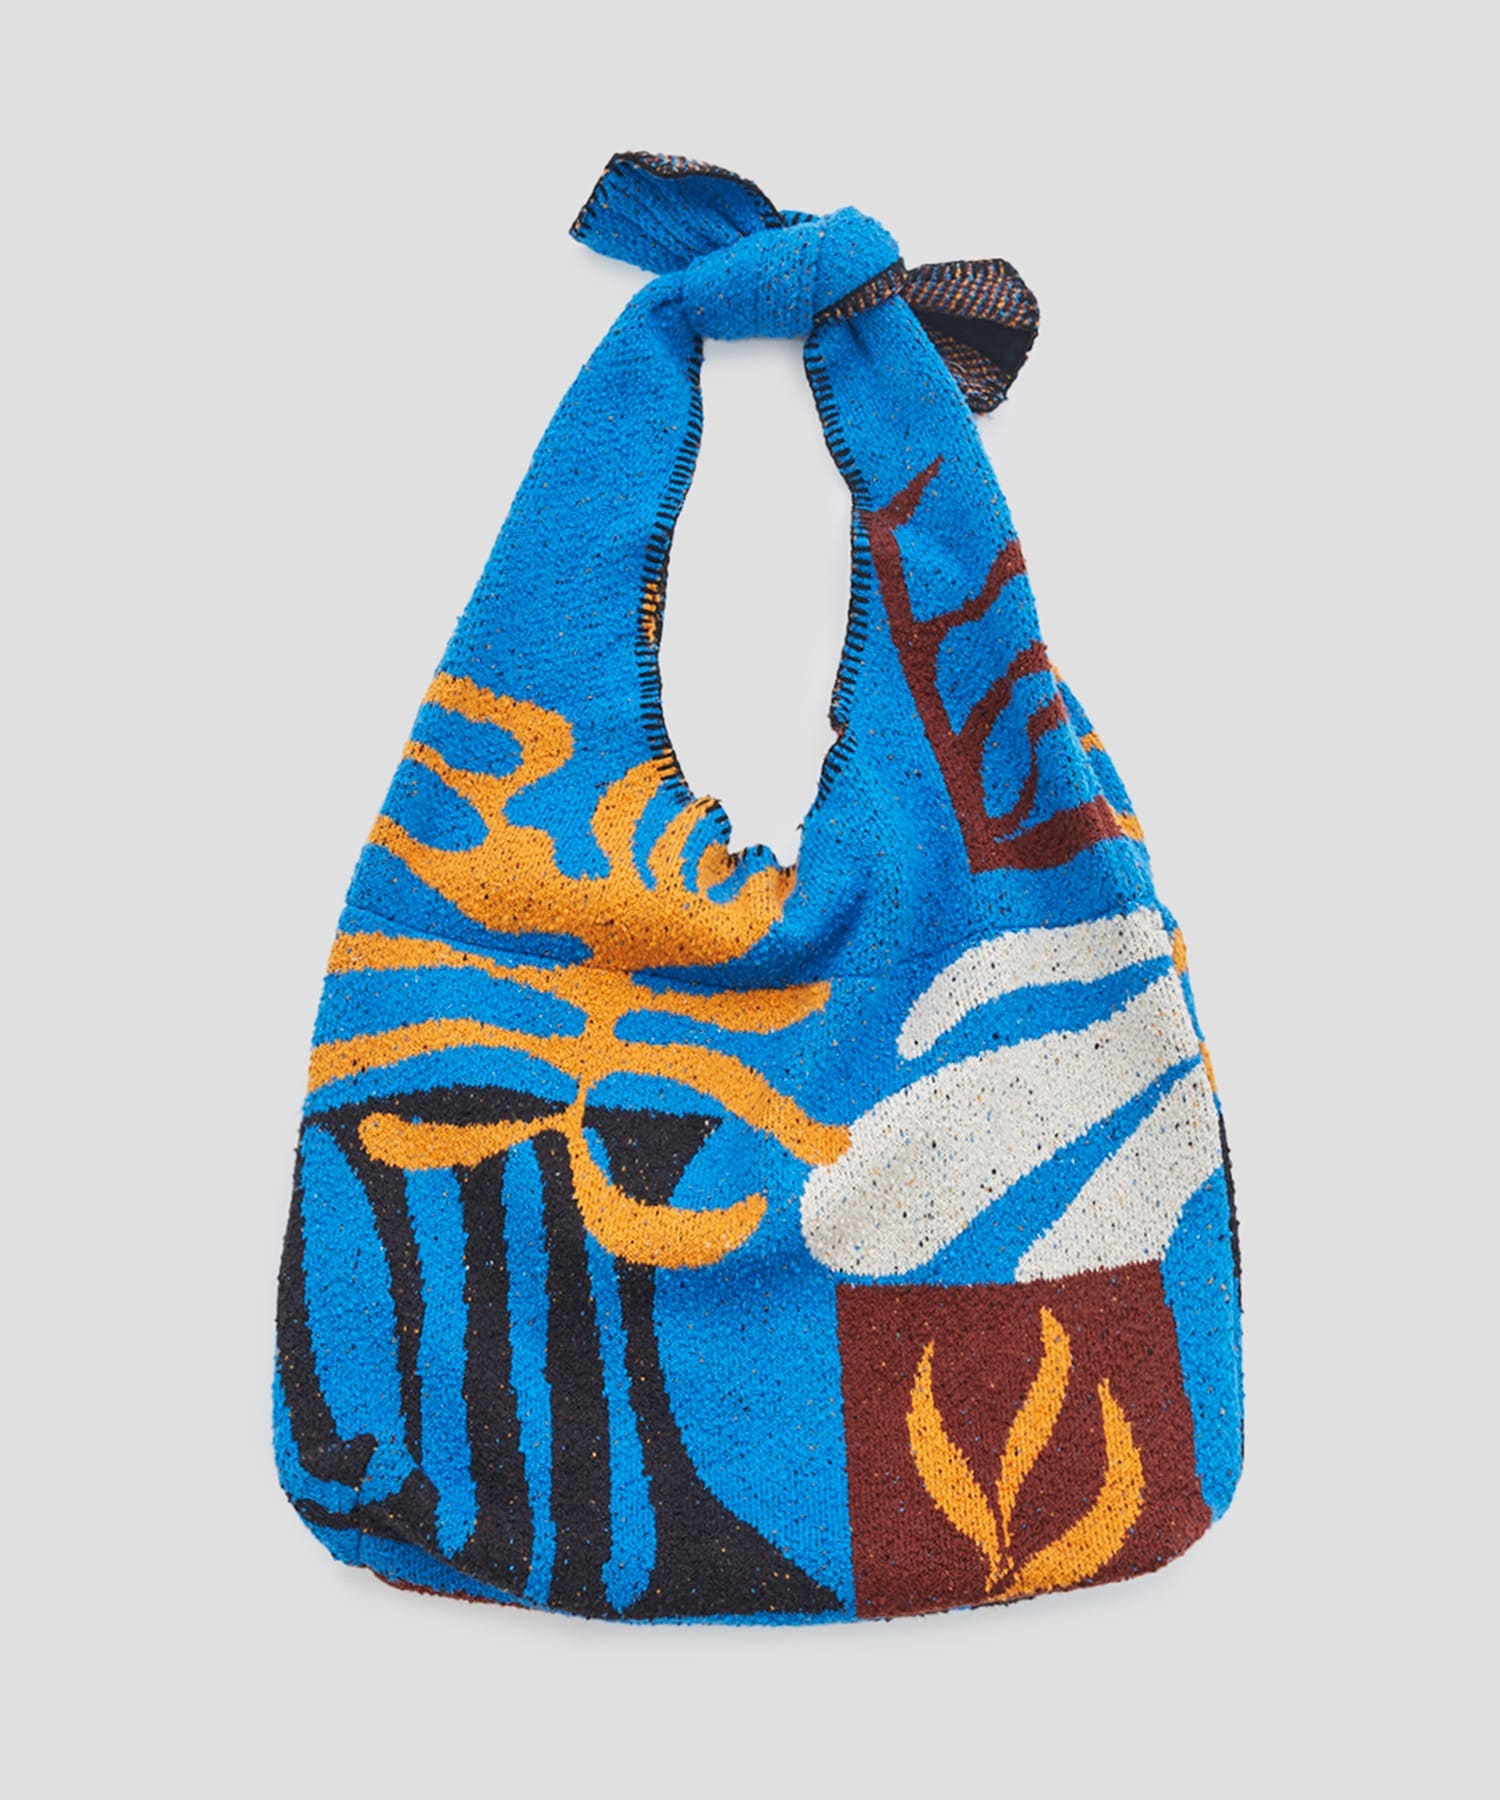 Intarsia-knit bag